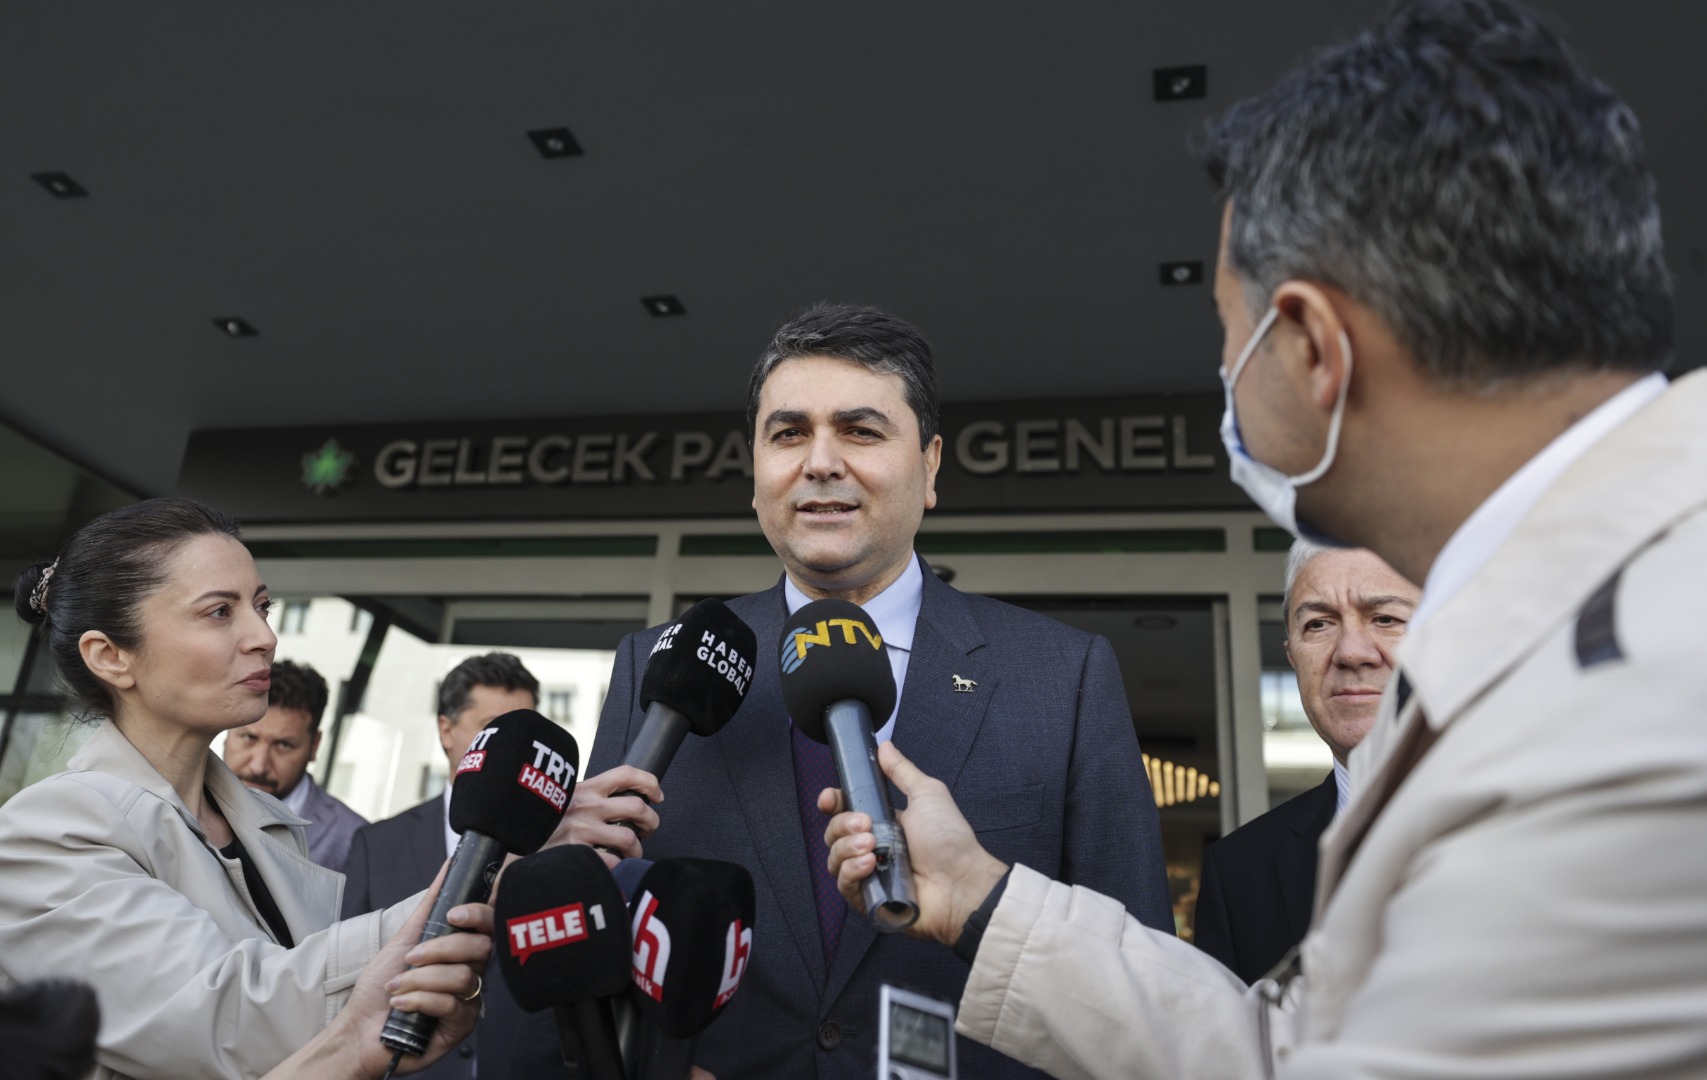 DP lideri Gültekin Uysal, Ahmet Davutoğlu ile görüştü